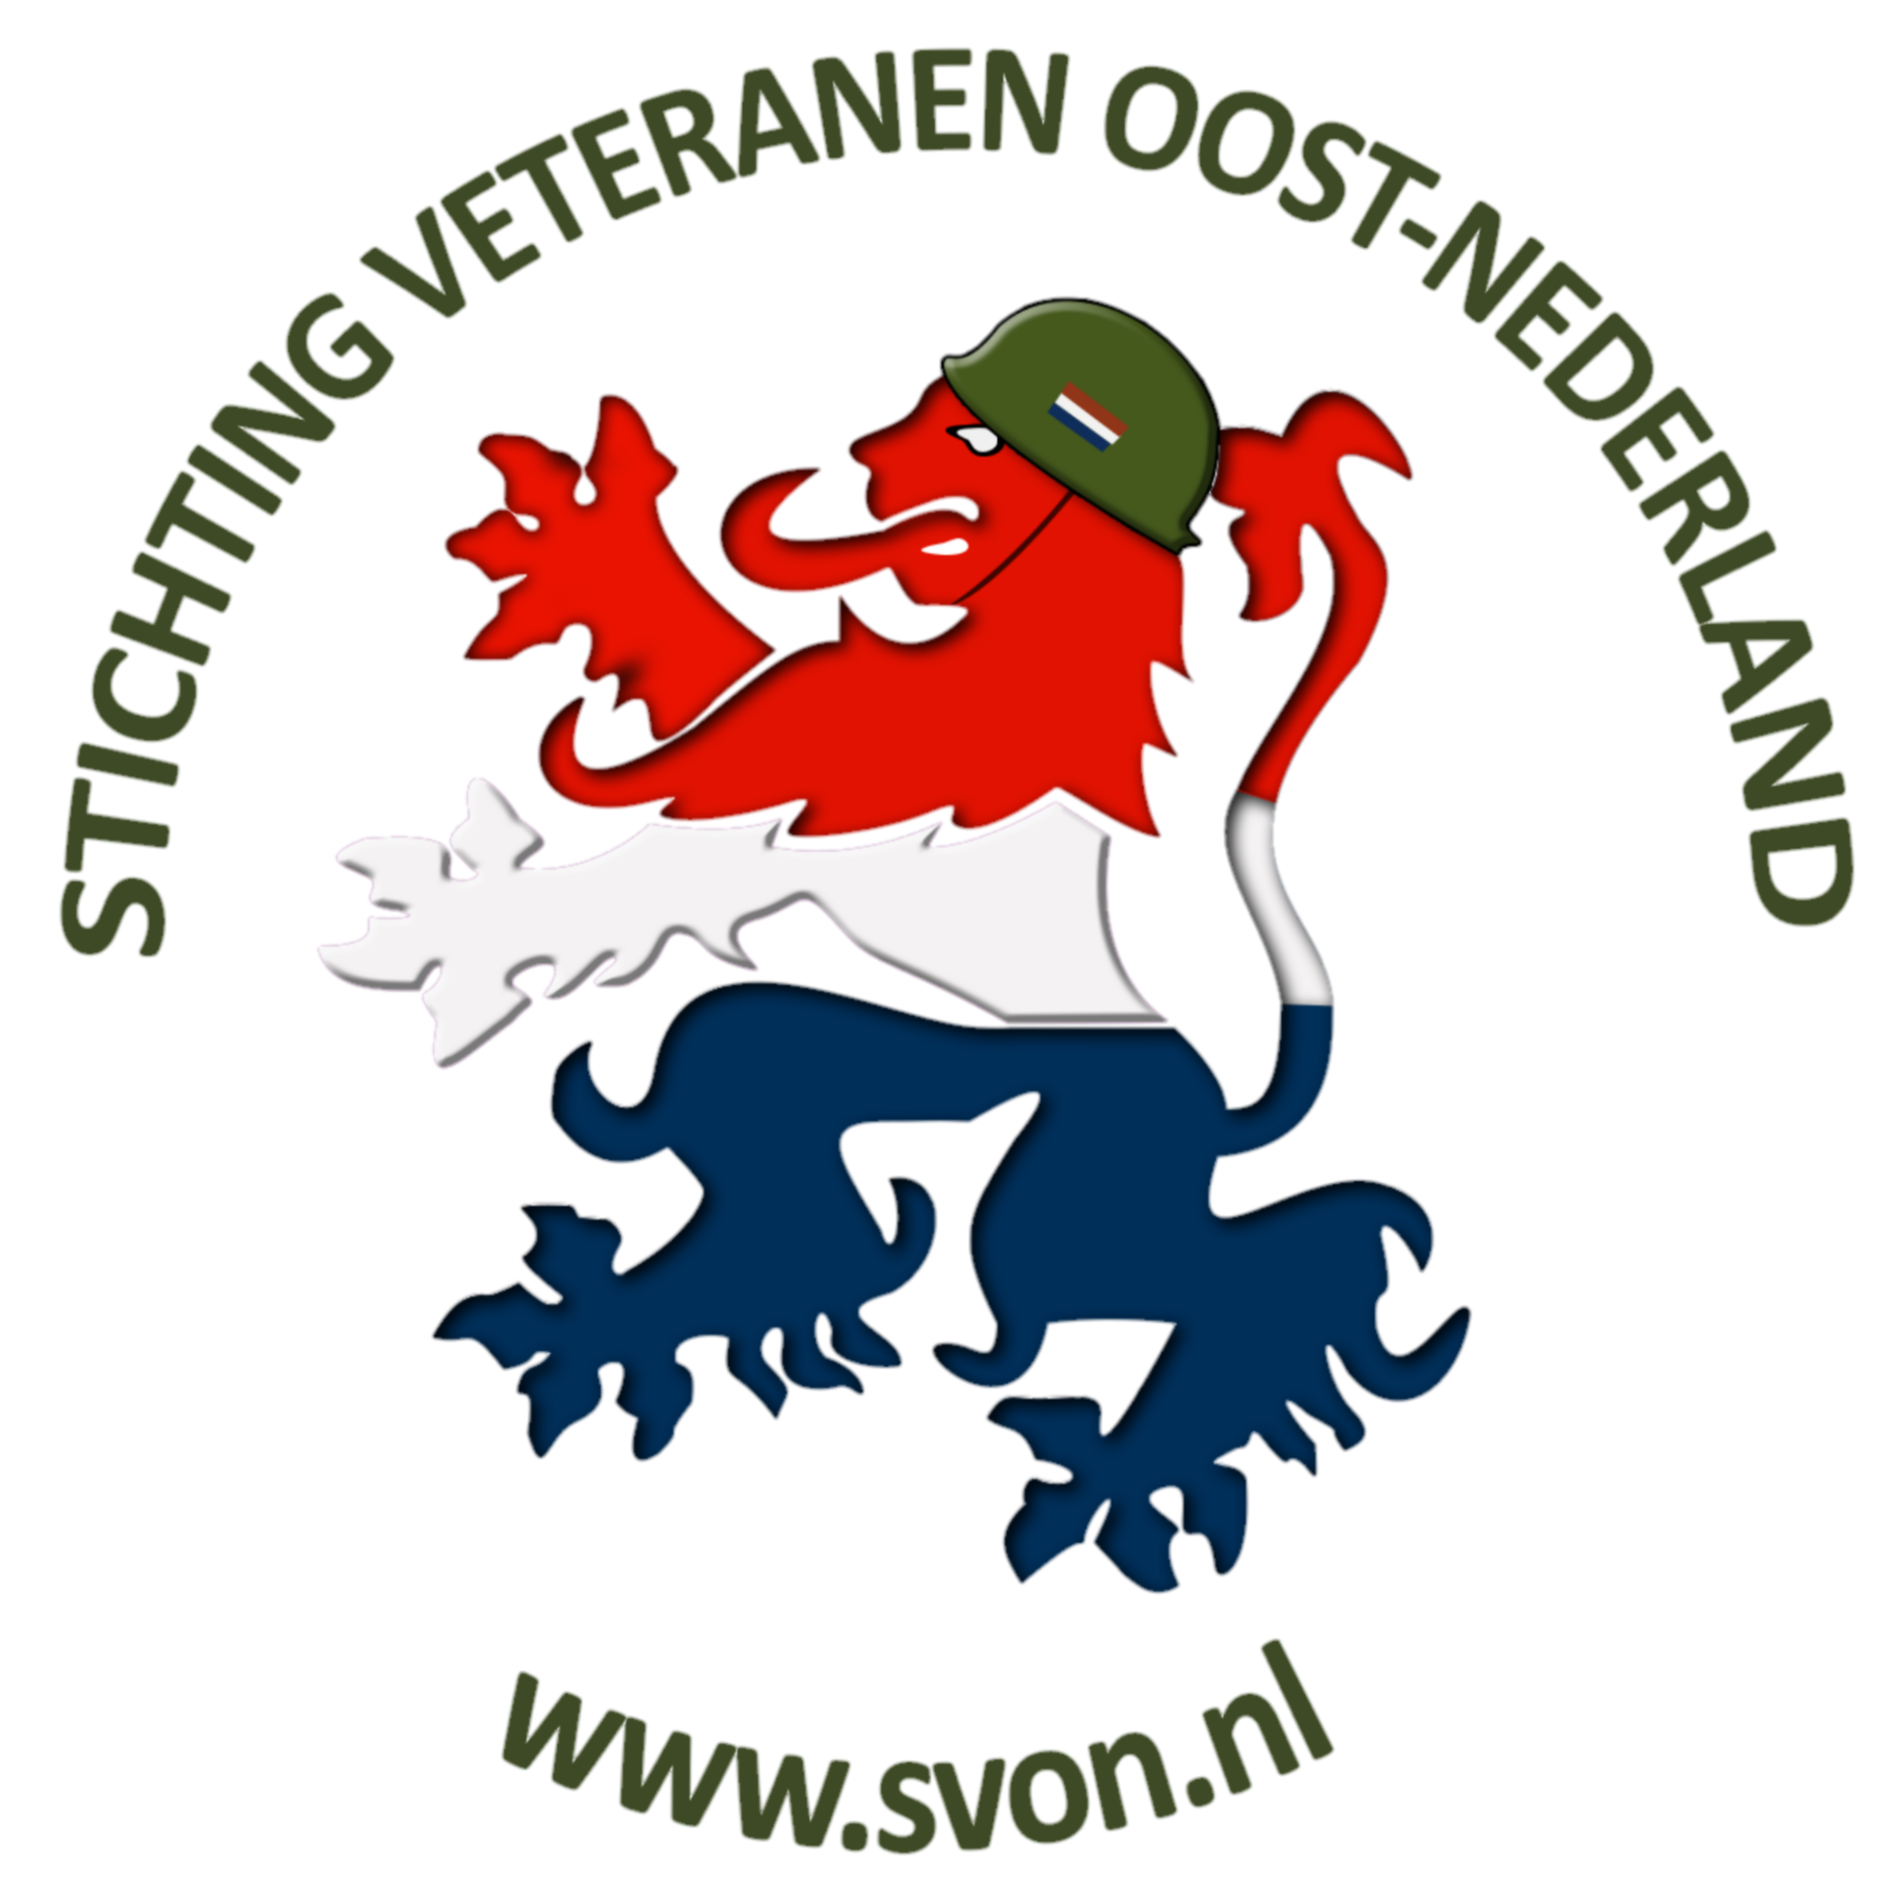 Stichting Veteranen Oost Nederland 